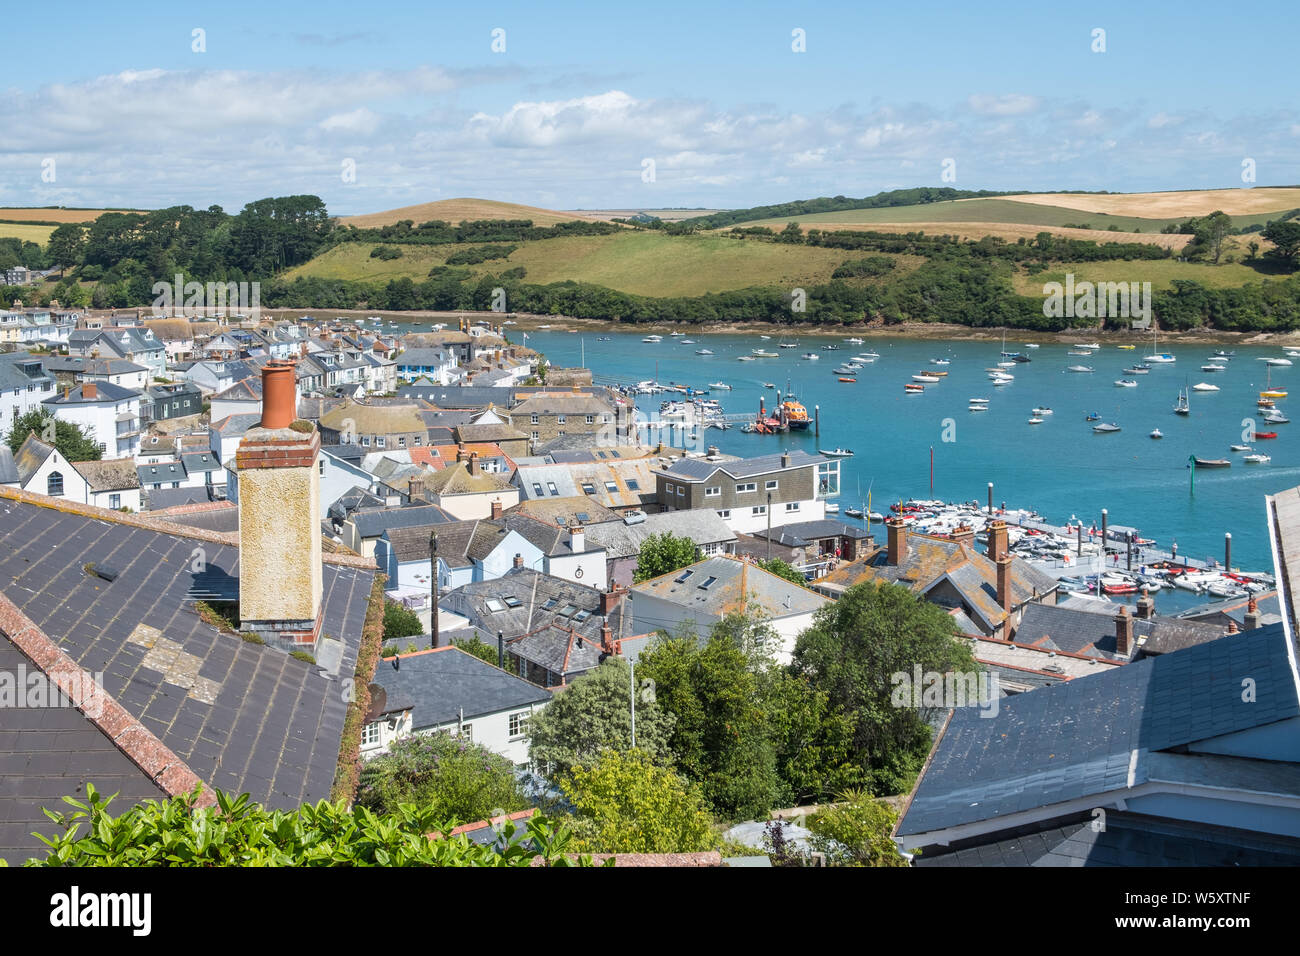 Mit Blick auf die Dächer von beliebten Stadt Salcombe in South Hams, Devon von einem hohen Aussichtspunkt Stockfoto